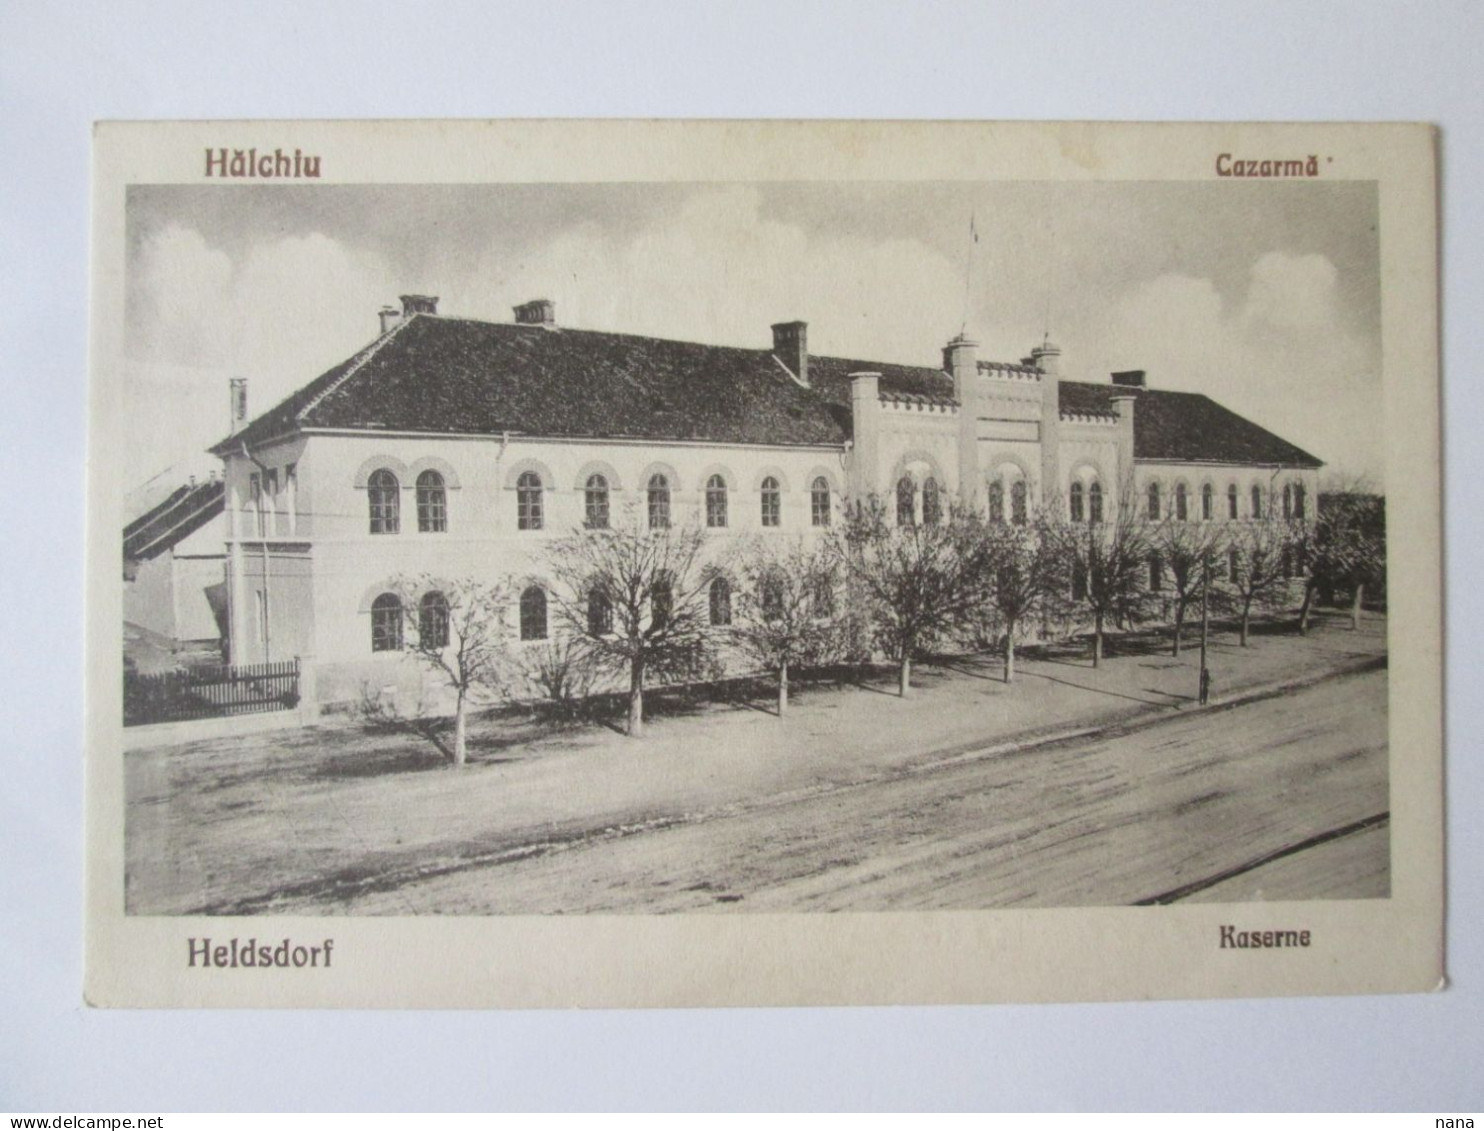 Romania-Hălchiu(Brașov):Cazarmă/Barracks Unused Postcard About 1920 - Rumania